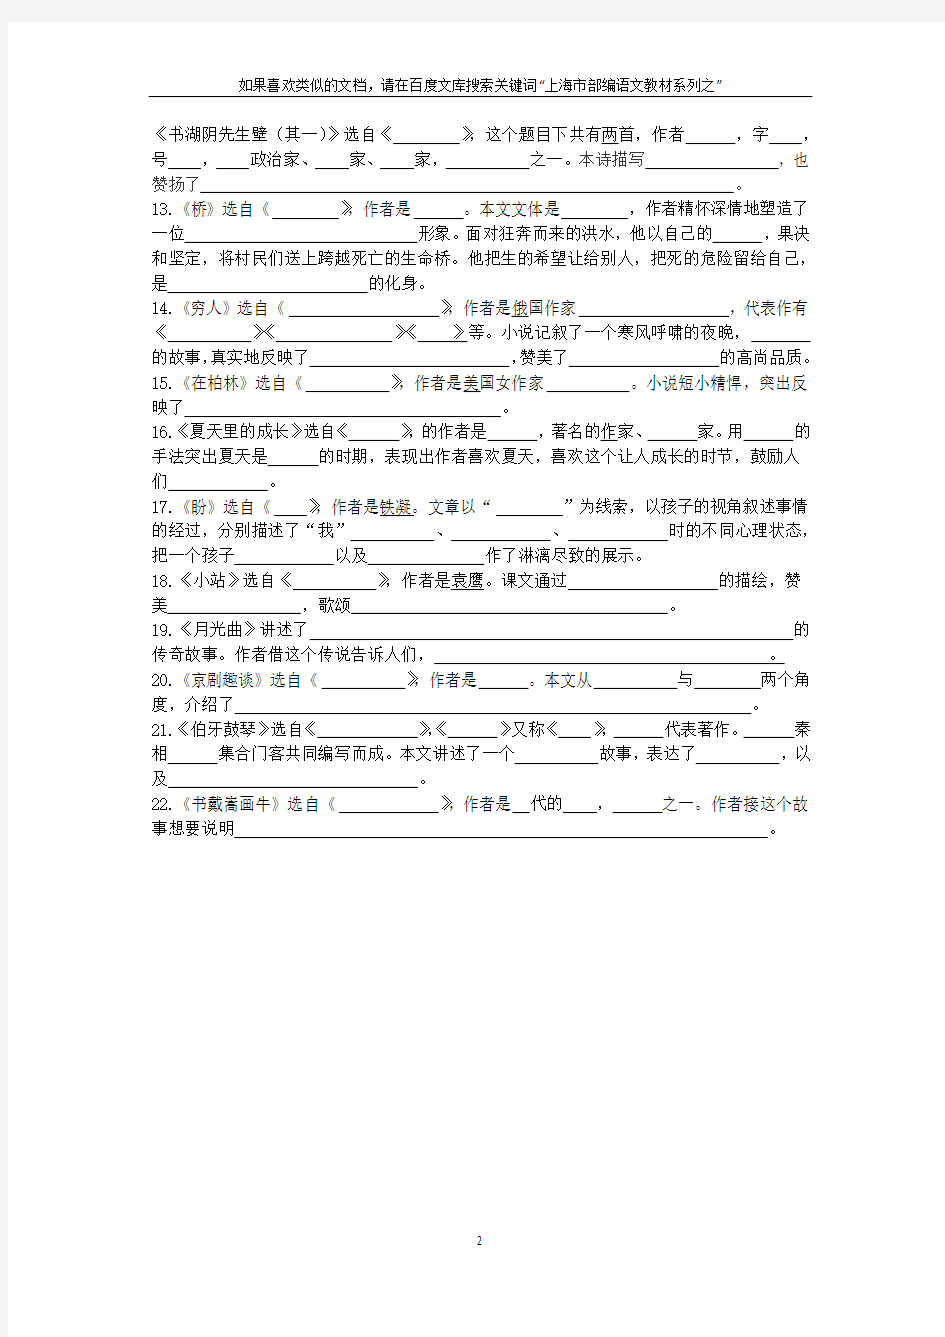 上海市部编语文教材系列之：六年级语文(上)所有课文文学常识和中心(含题目和答案)